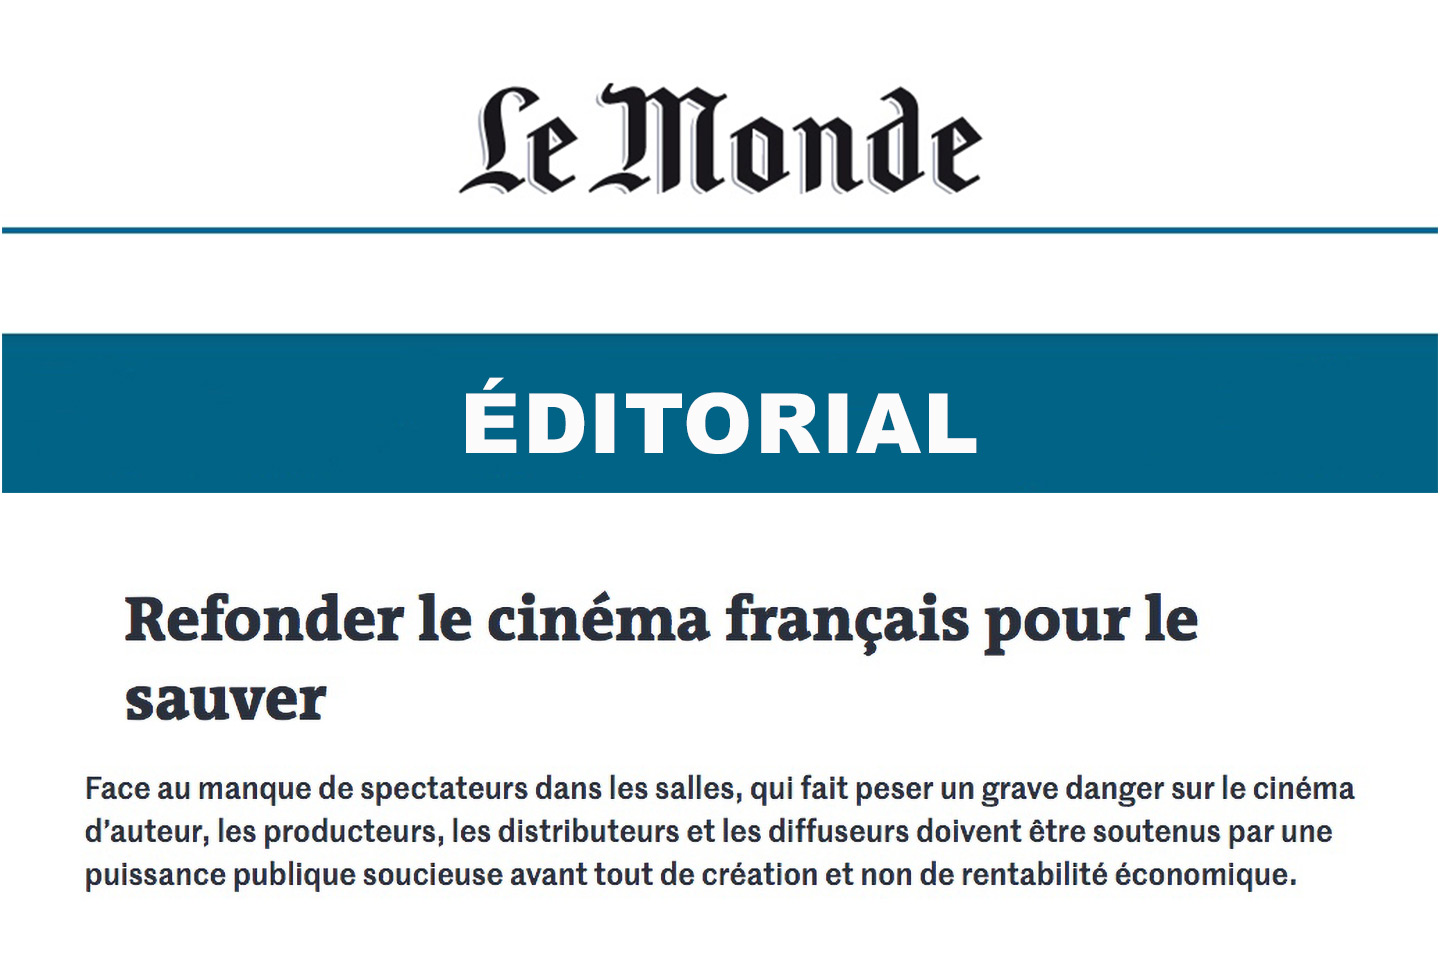 Refonder le cinéma français pour le sauver"